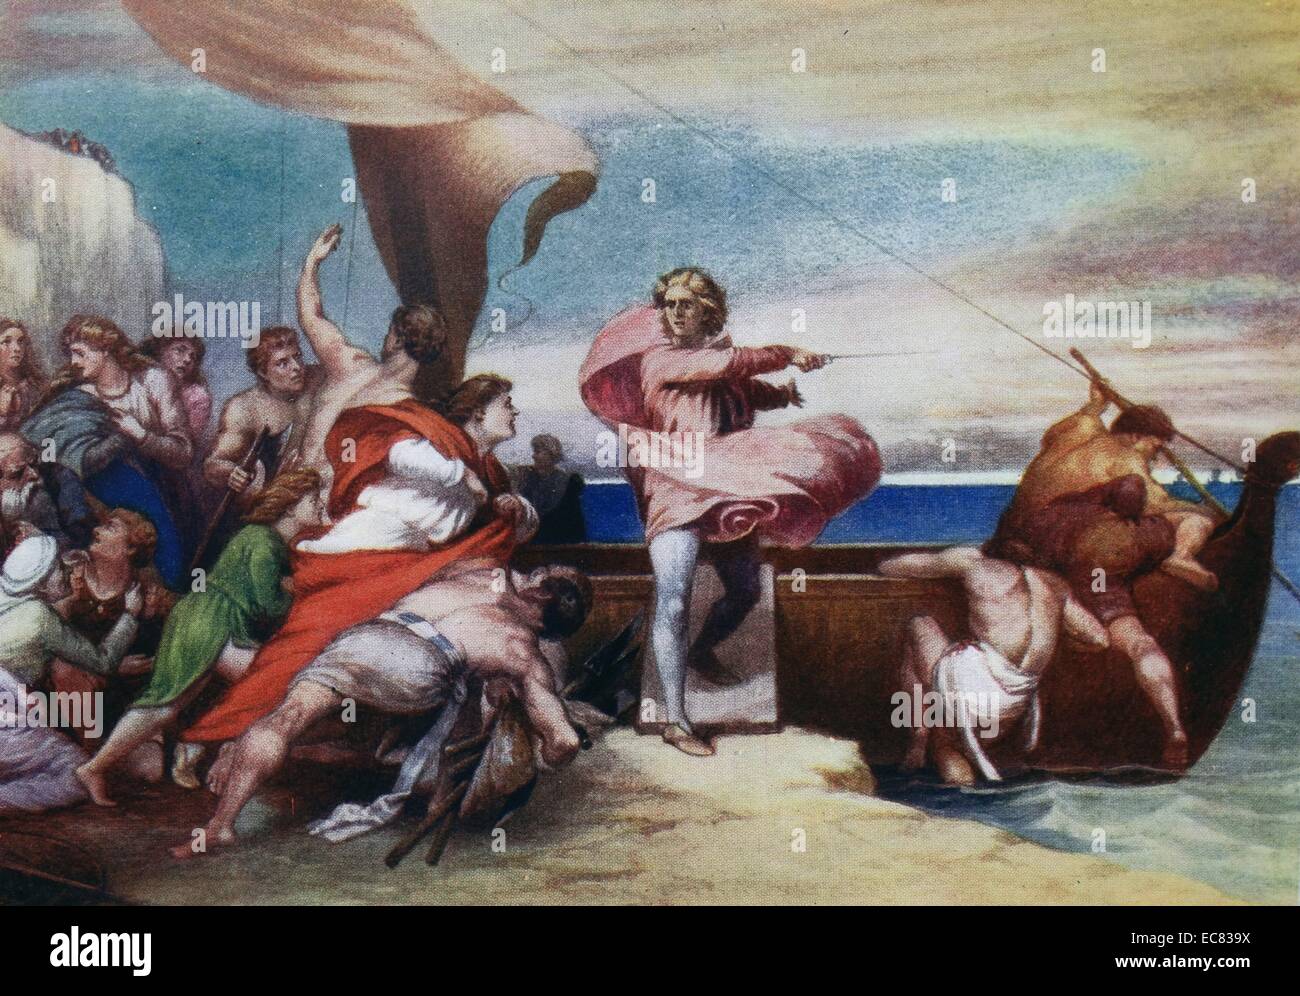 Pittura intitolato "Alfred incitare i sassoni per impedire lo sbarco dei danesi". Dipinto da George Frederic Watts (1817-1904) vittoriana inglese pittore e scultore associato con il movimento simbolista. Datata 1846 Foto Stock